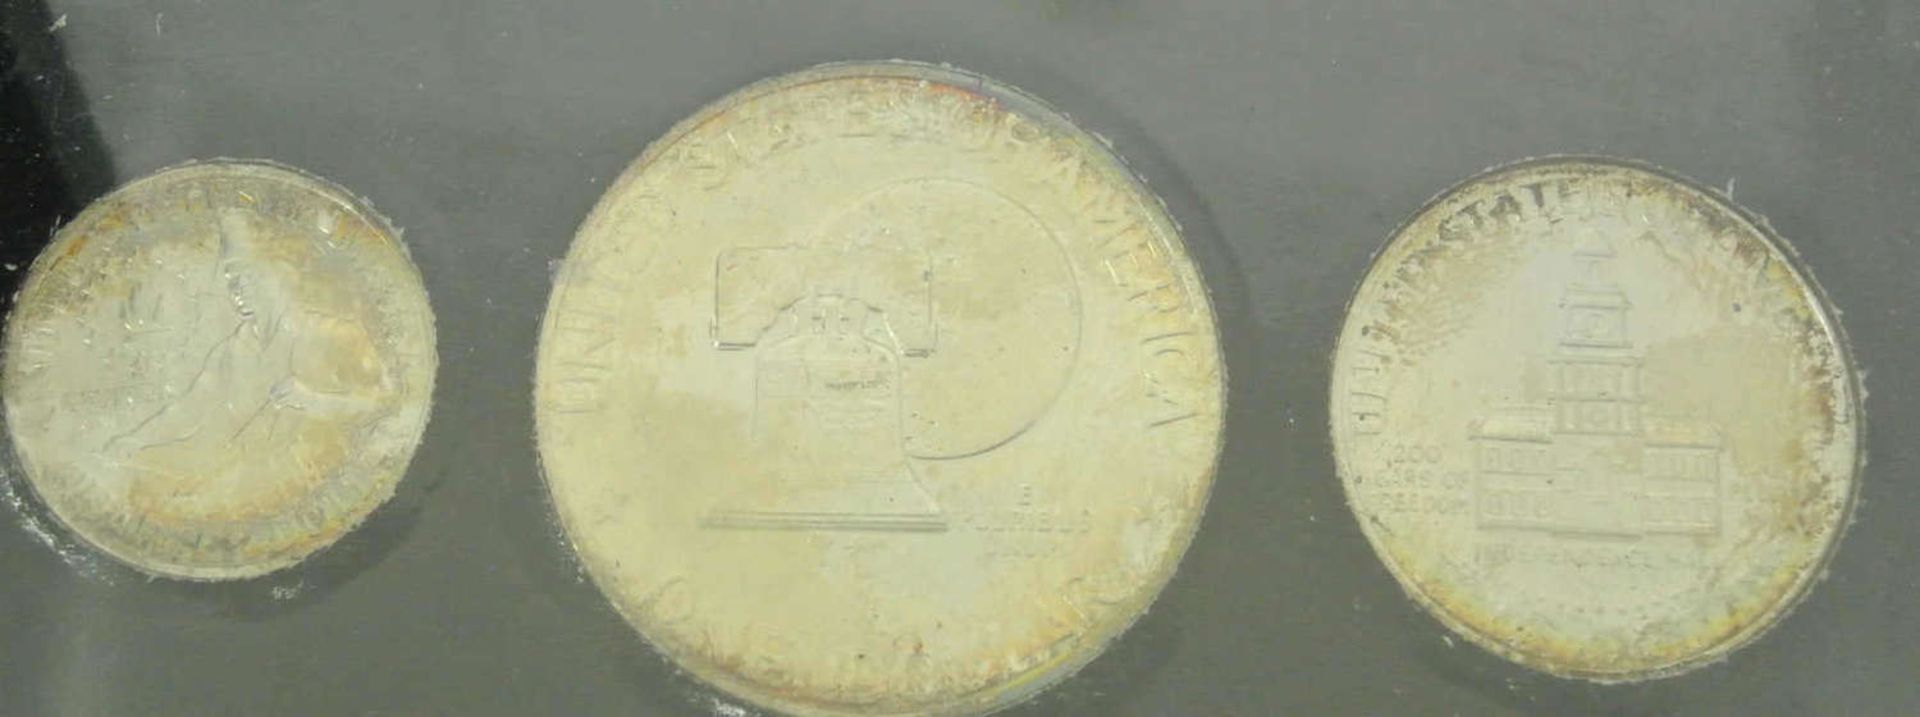 1 Kanada Dollar 1997, Spiegelglanz, sowie 1x USA Bicentennial Coinage Set 1976 - Bild 2 aus 3